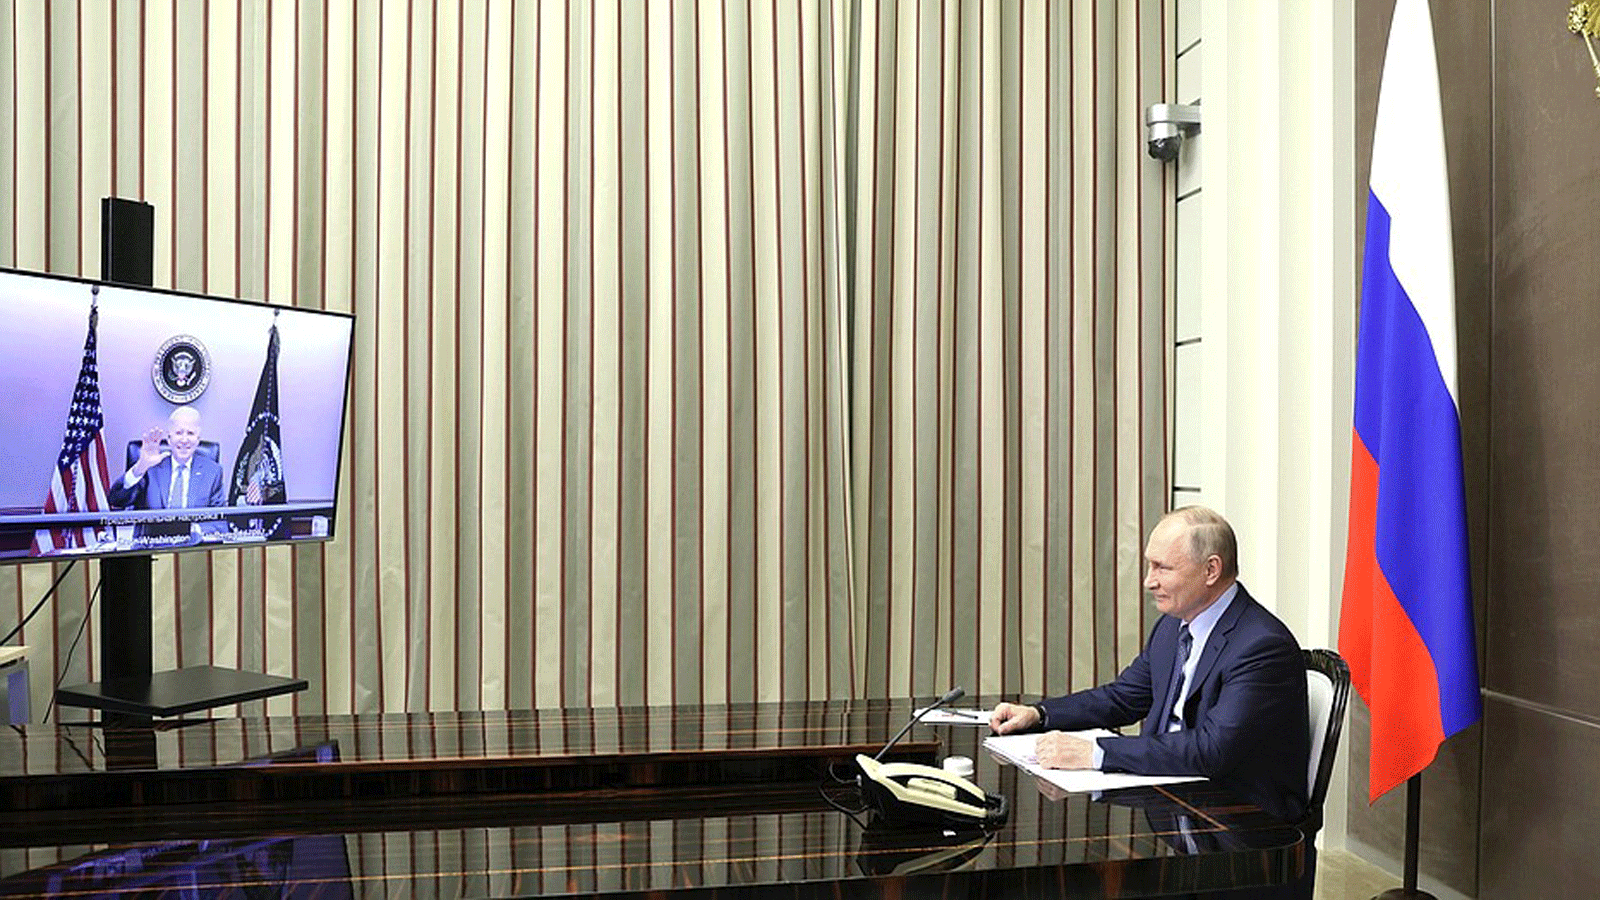 صورة من صفحة الرئاسة الروسية الموثقة على تويتر للاجتماع الافتراضي السابق بين الرئيسين الأميركي جو بايدن والروسي فلاديمير بوتين